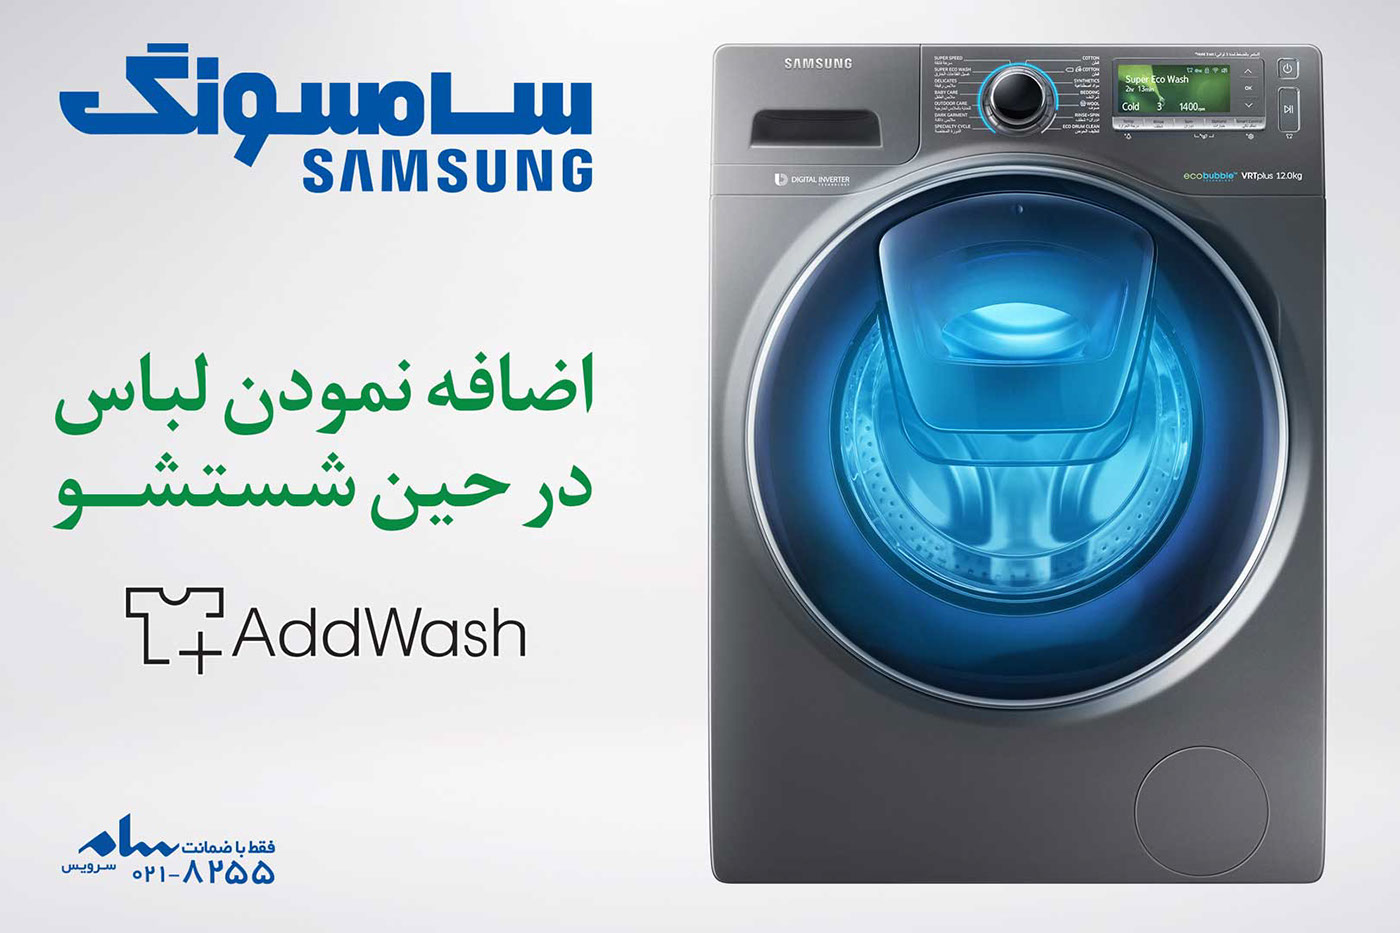 Samsung addwash Washing machine billboard creative Motion Billboard Advertising  Samsung Home Appliances graphic design  creative advertising